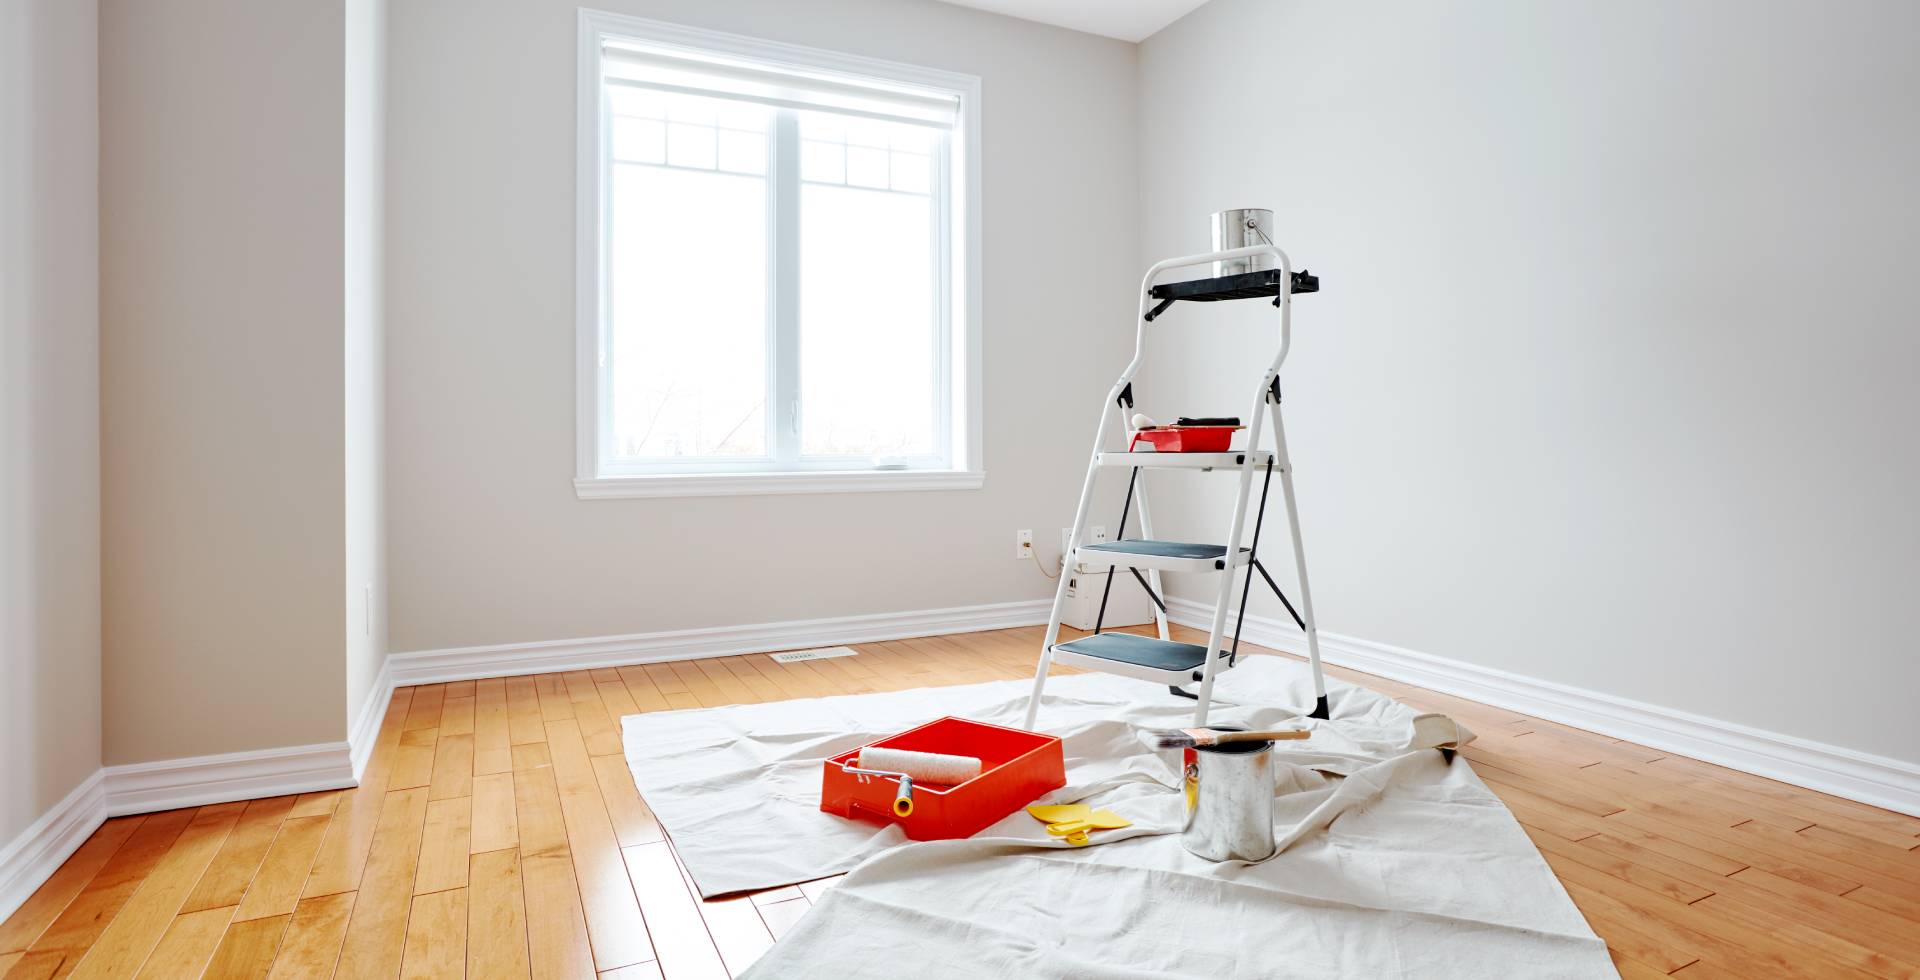 Habitación blanca con una escalera y herramientas de pintura